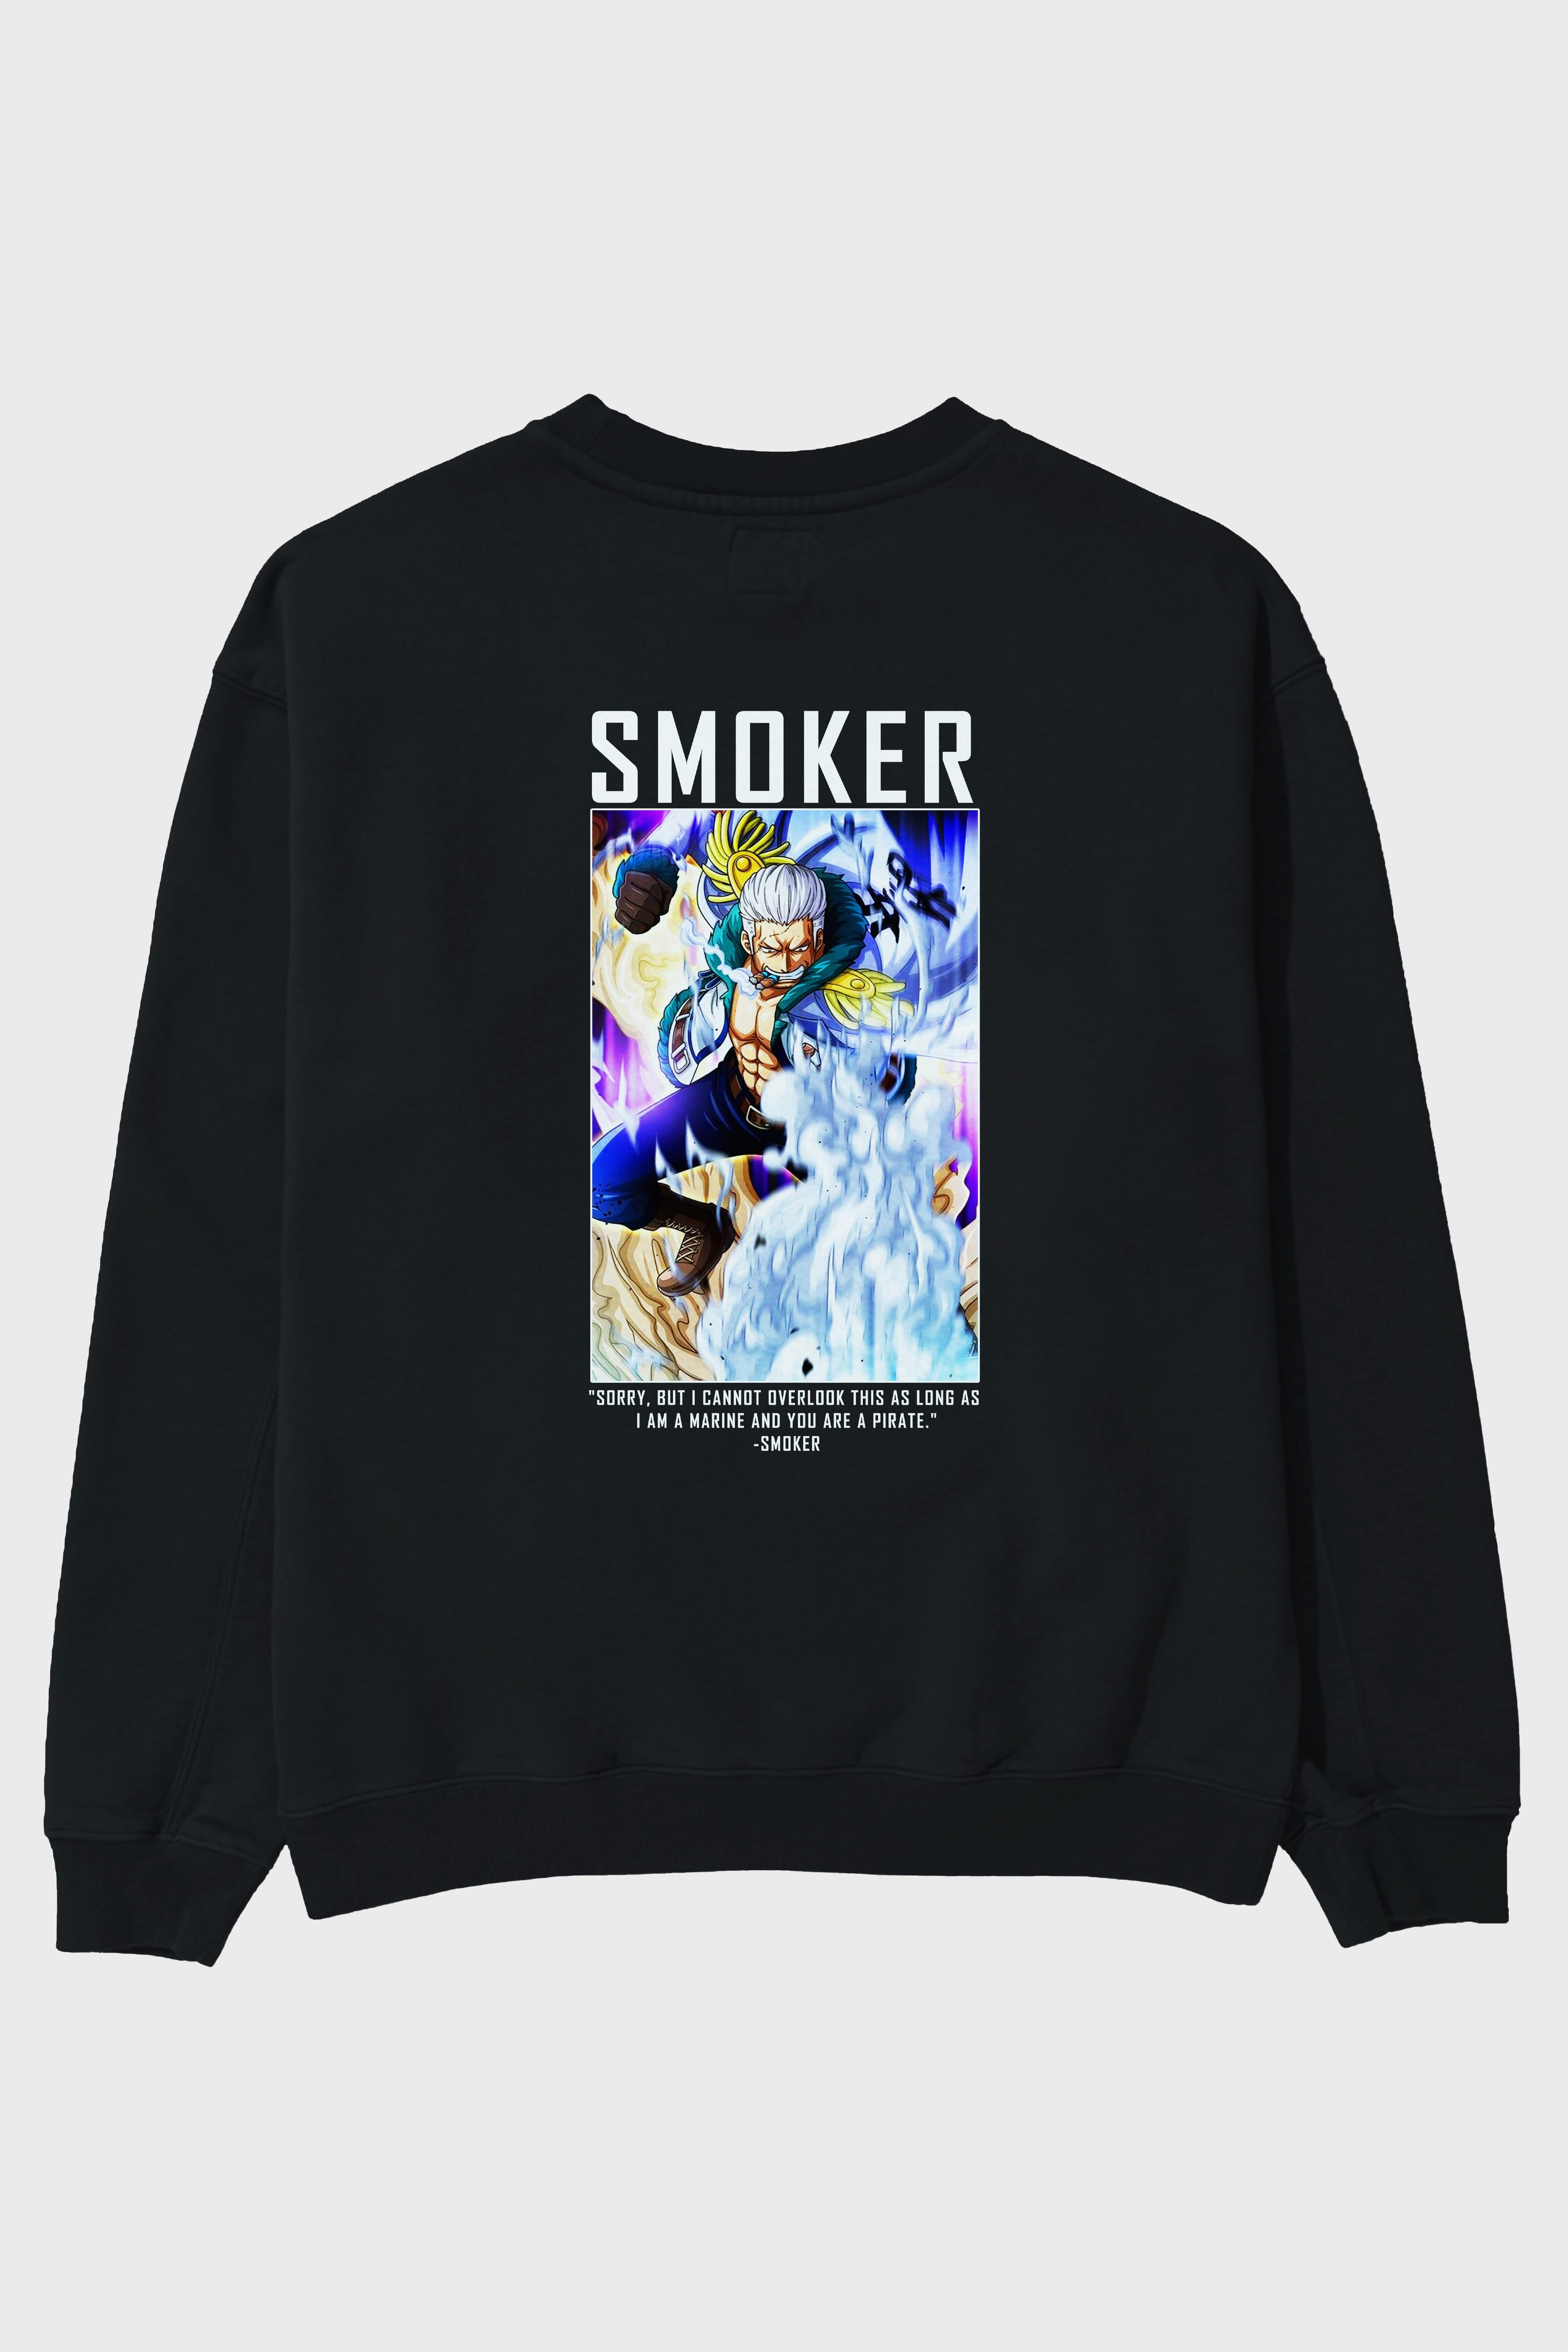 Smoker Arka Baskılı Anime Oversize Sweatshirt Erkek Kadın Unisex